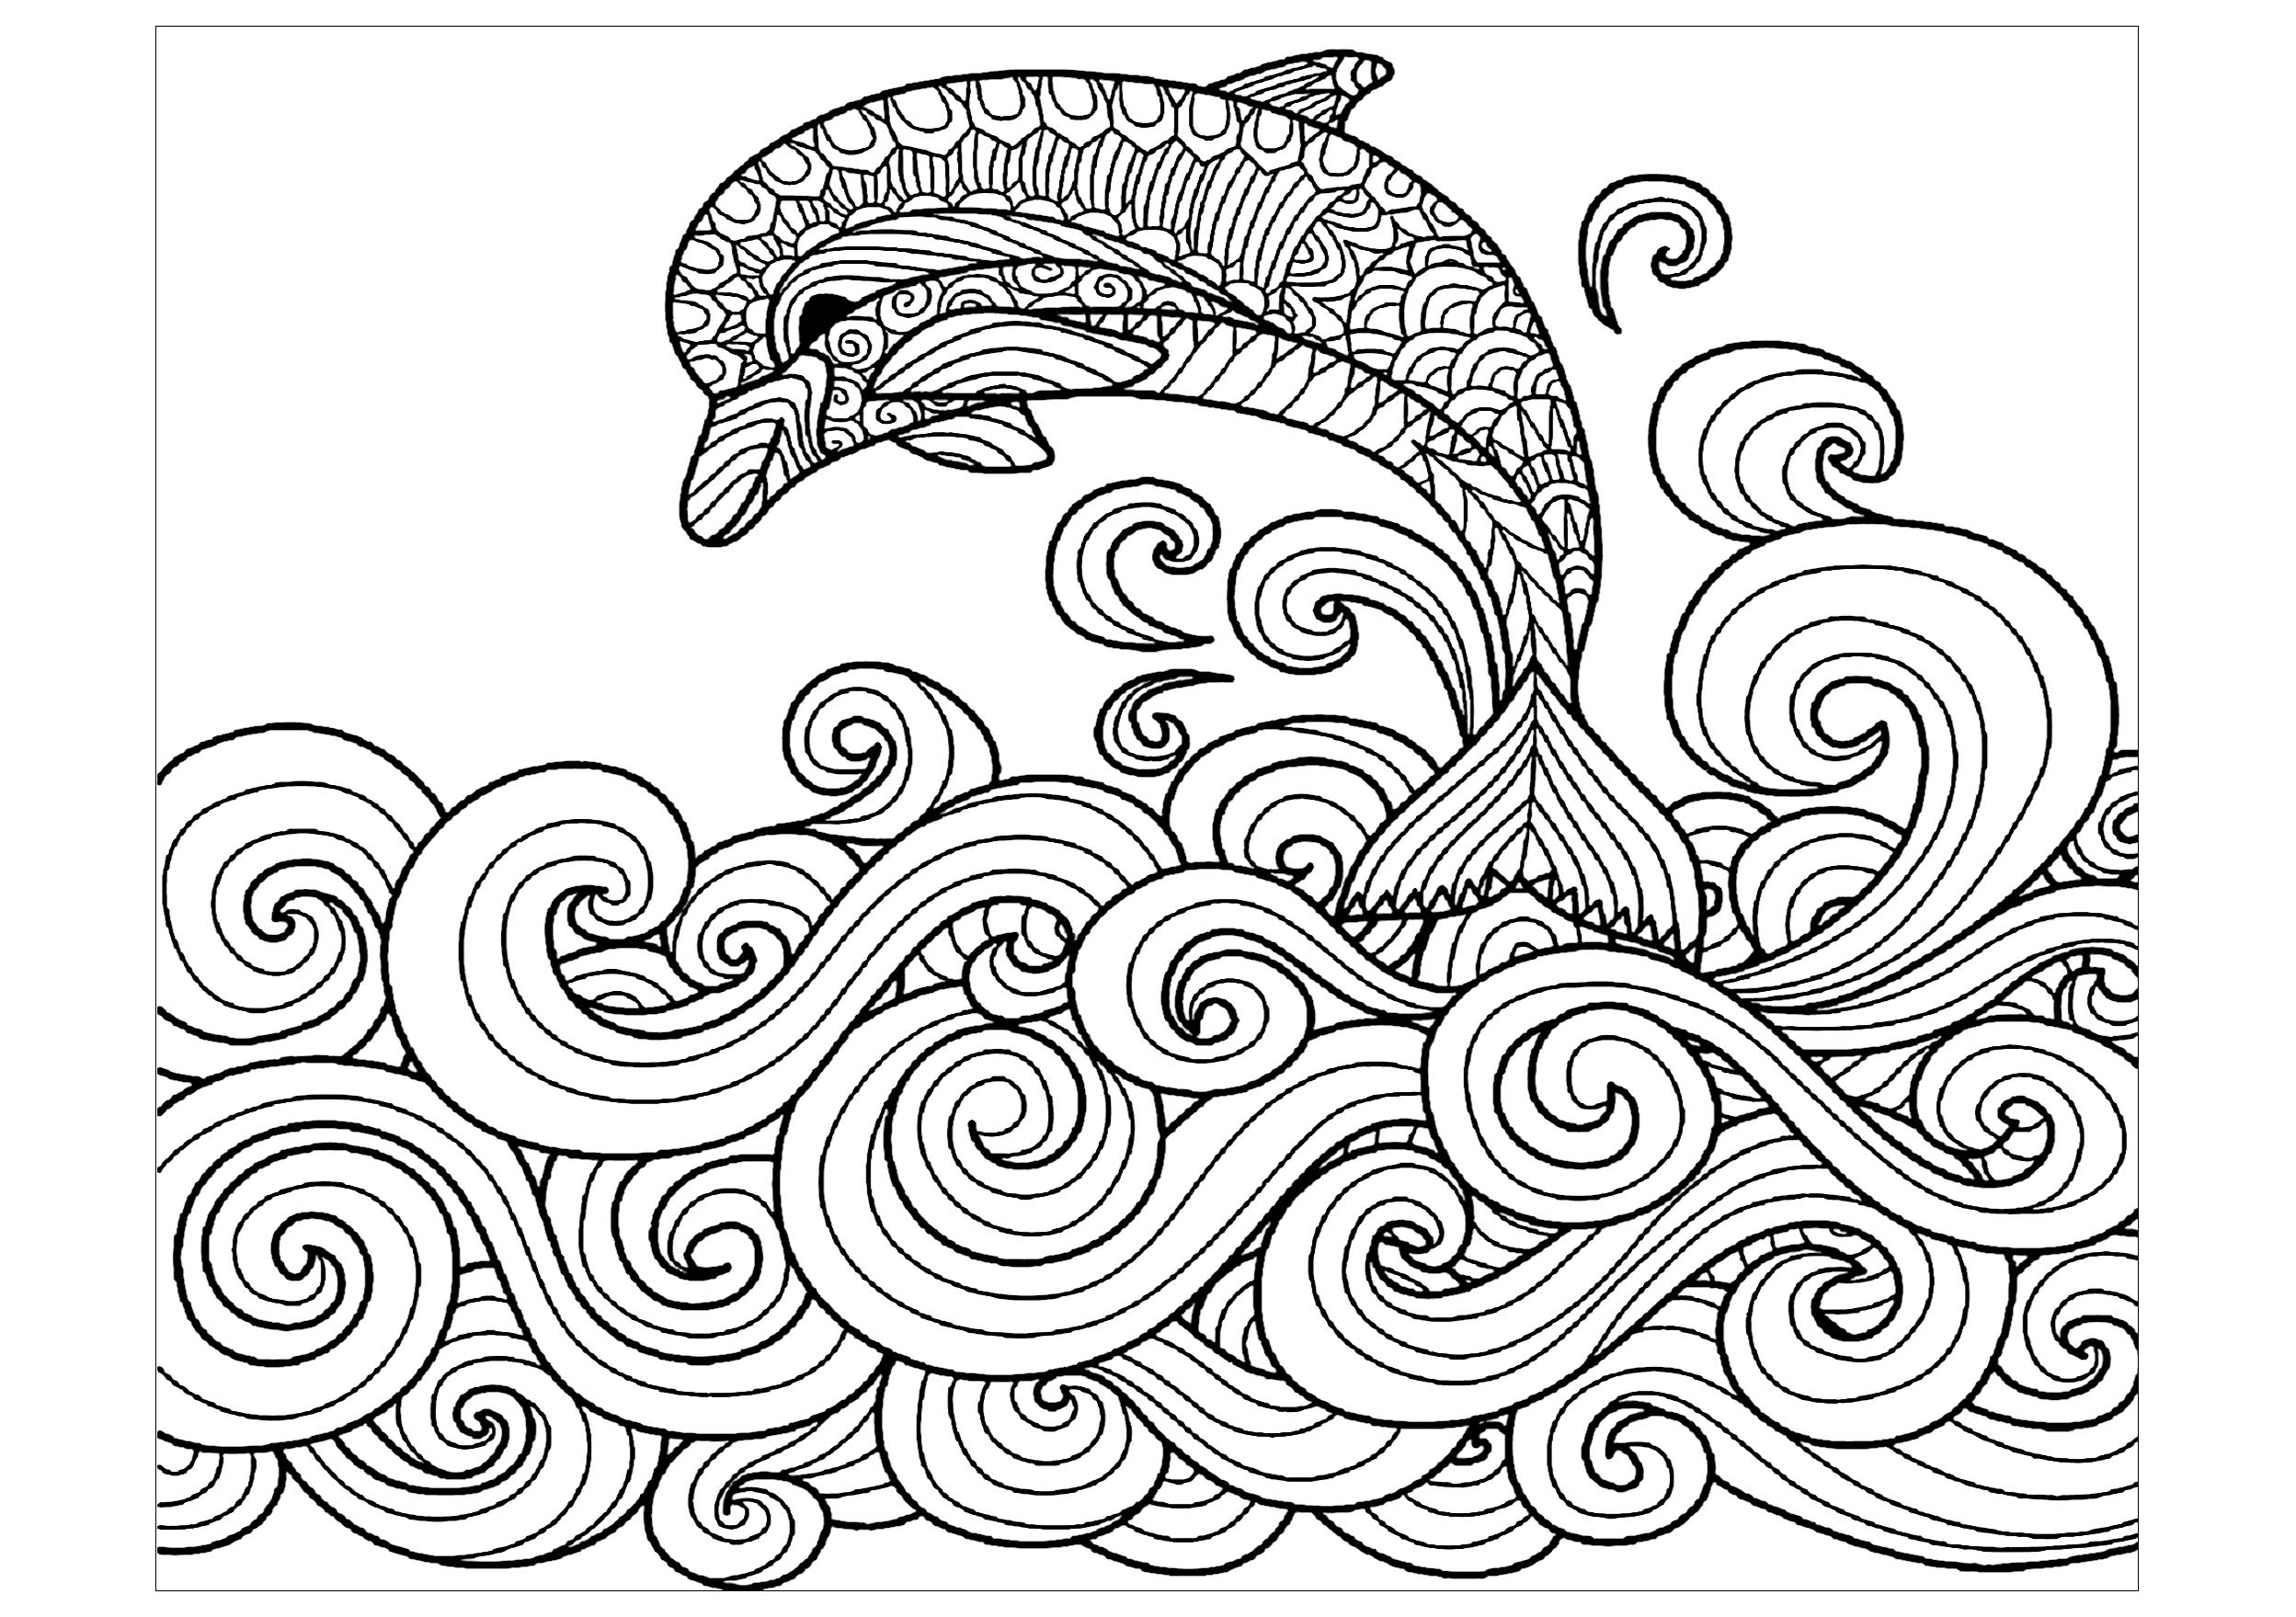 Pagina da colorare : Delfini - 1, Artista : Bimdeedee   Fonte : 123rf